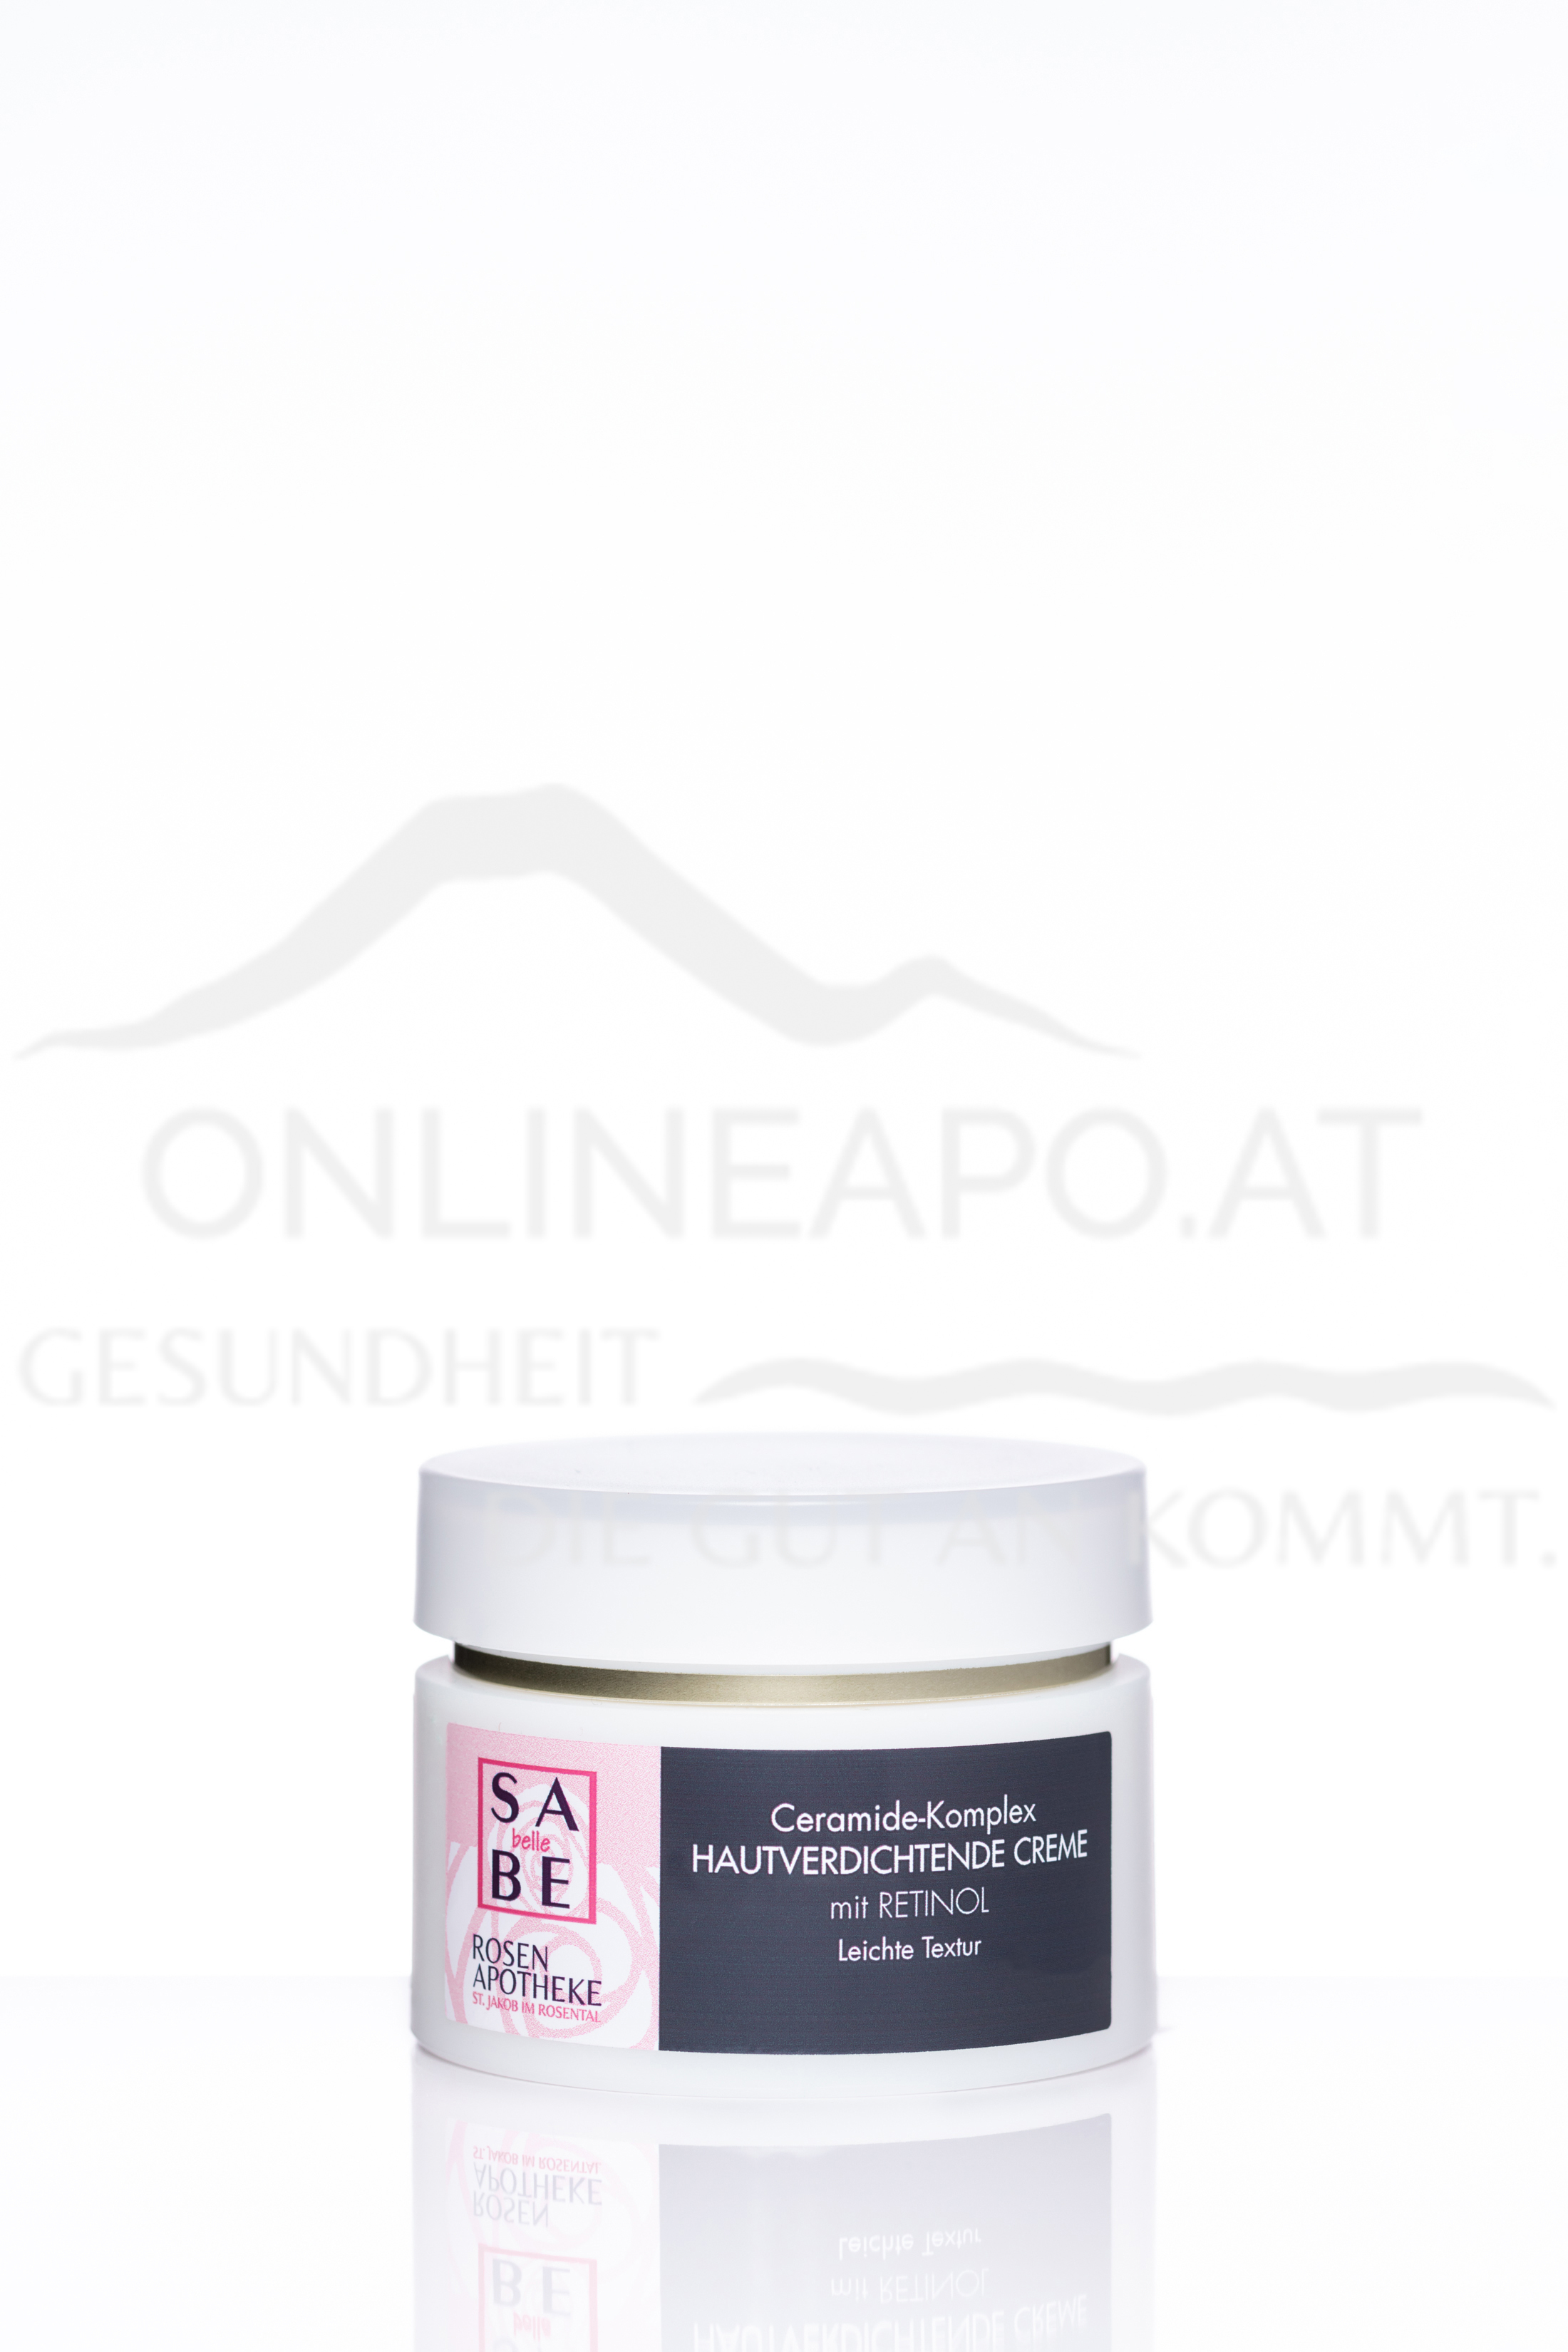 SABE belle Ceramide-Komplex Hautverdichtende Creme mit Retinol - Leichte Textur